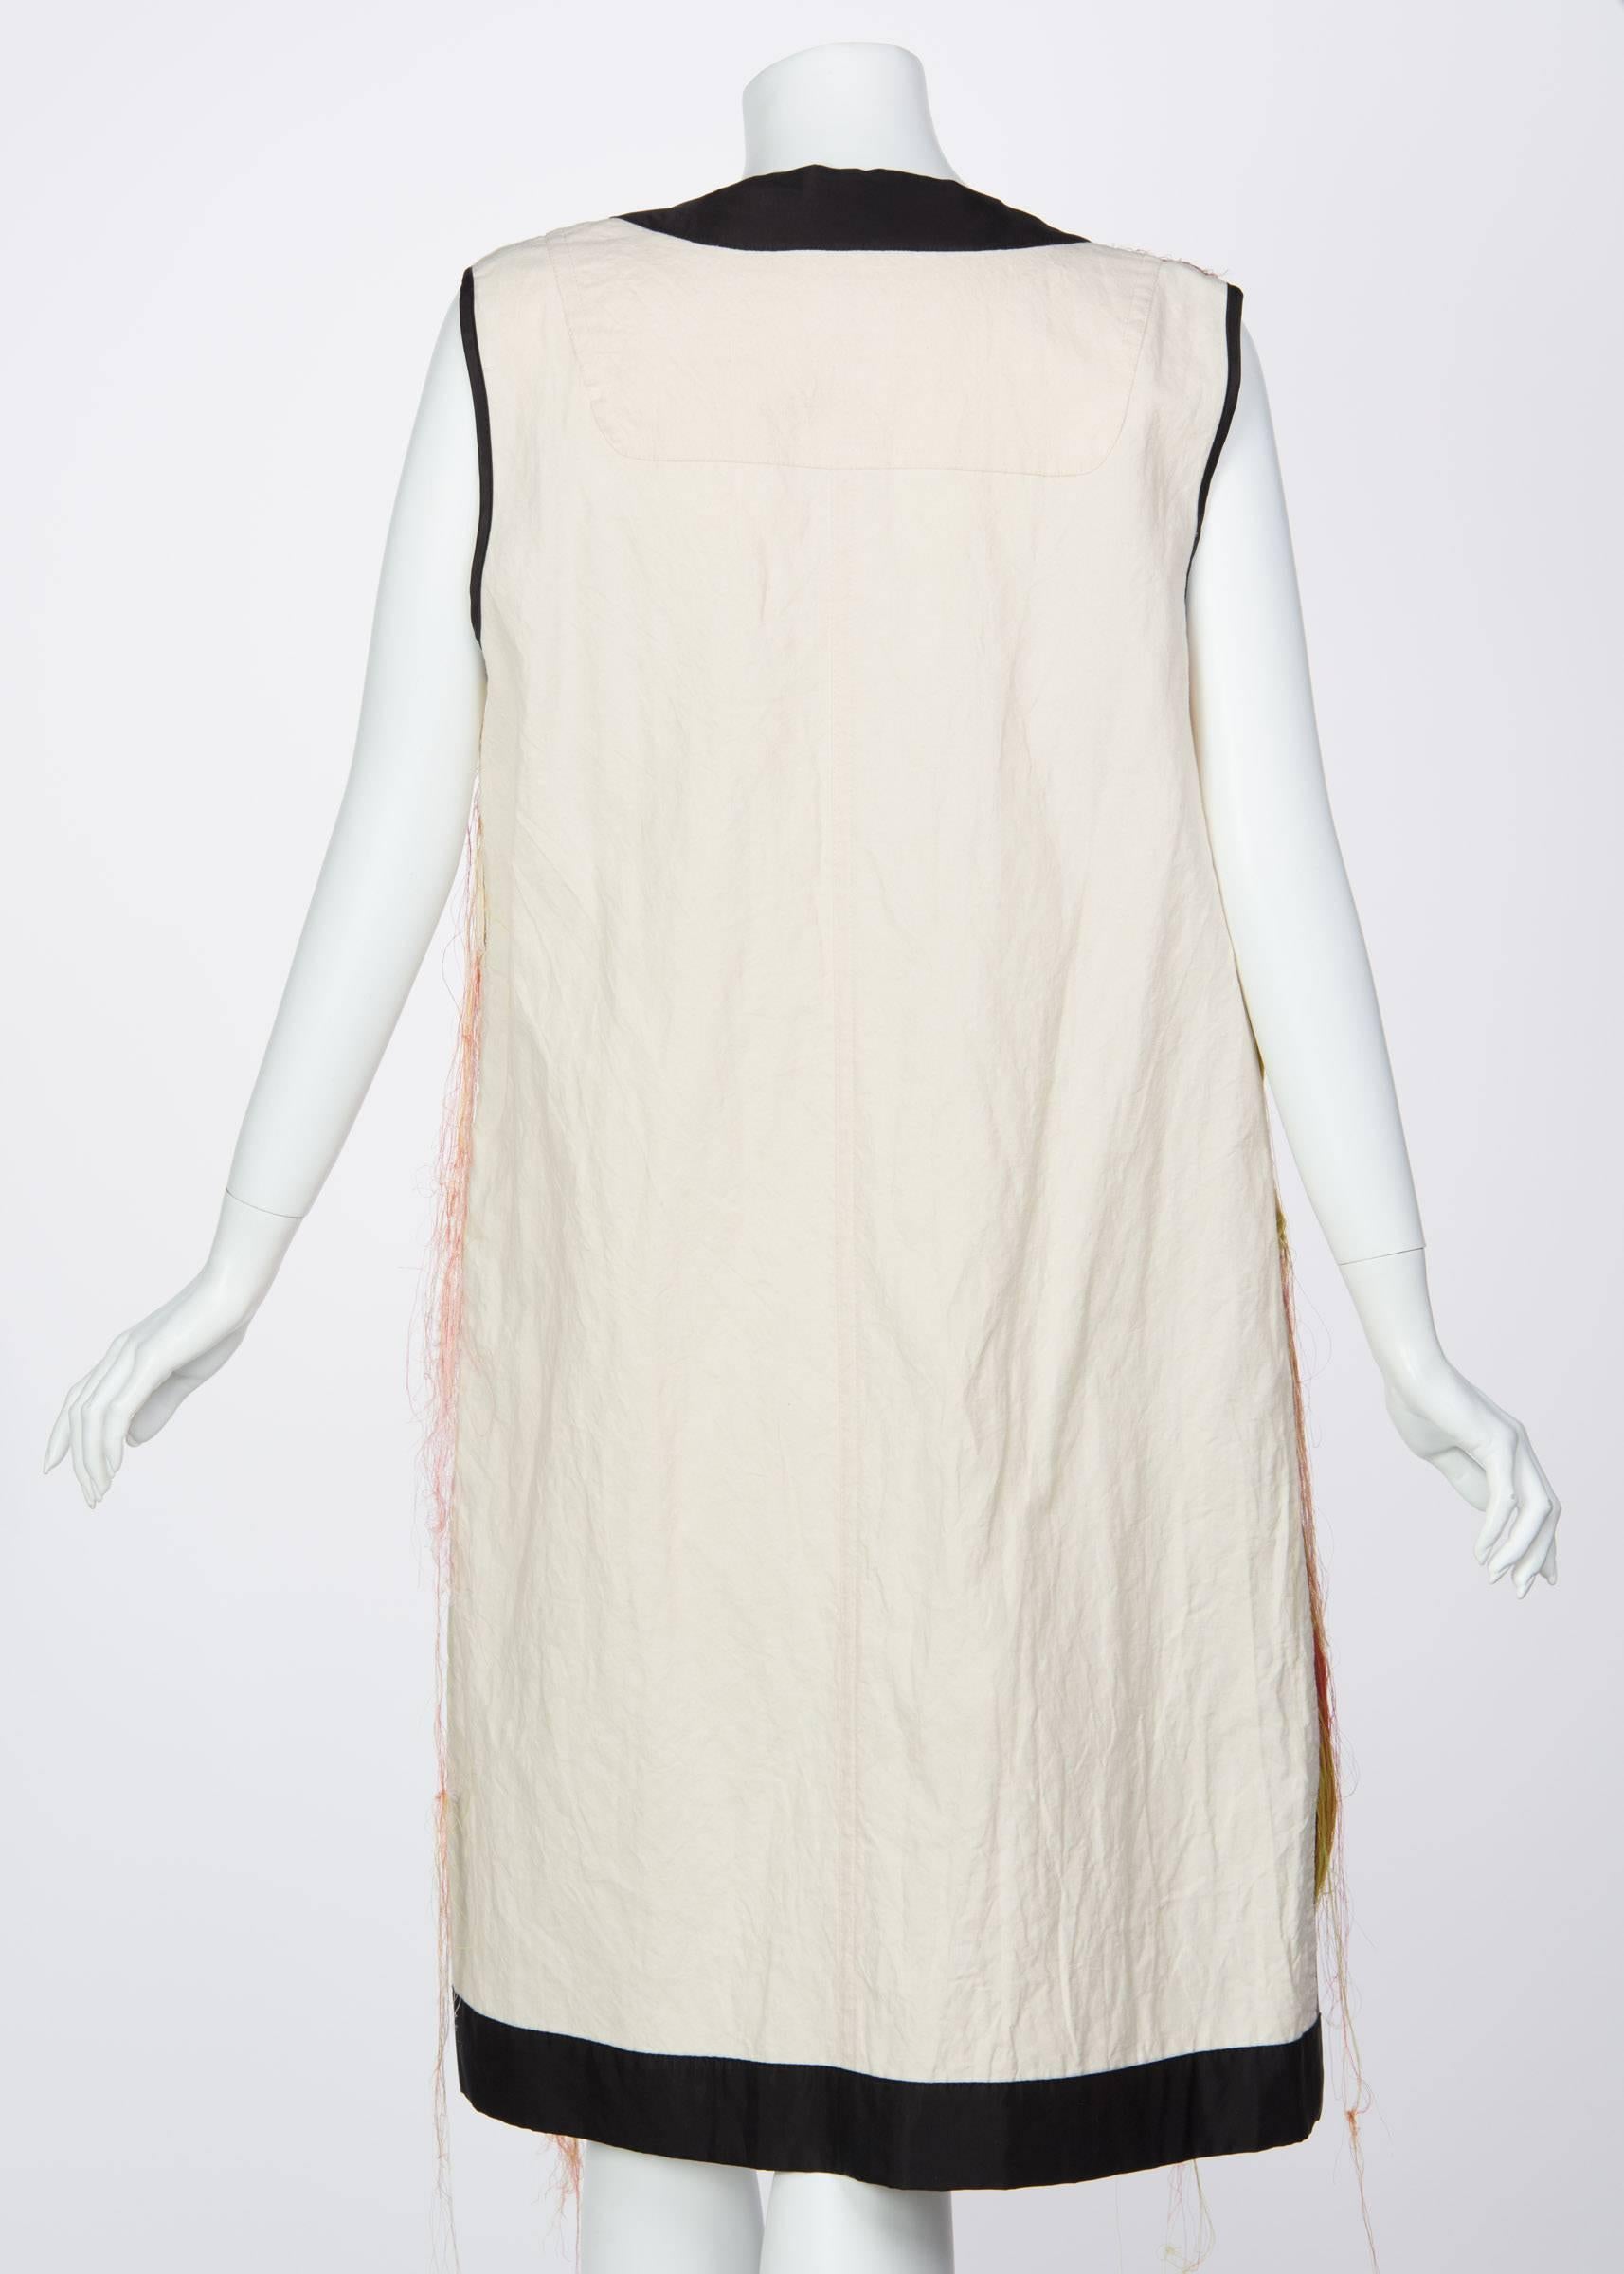 Dries Van Noten Spring Runway Look 30 Silk Thread Floral Brocade Vest, 2014  For Sale 2